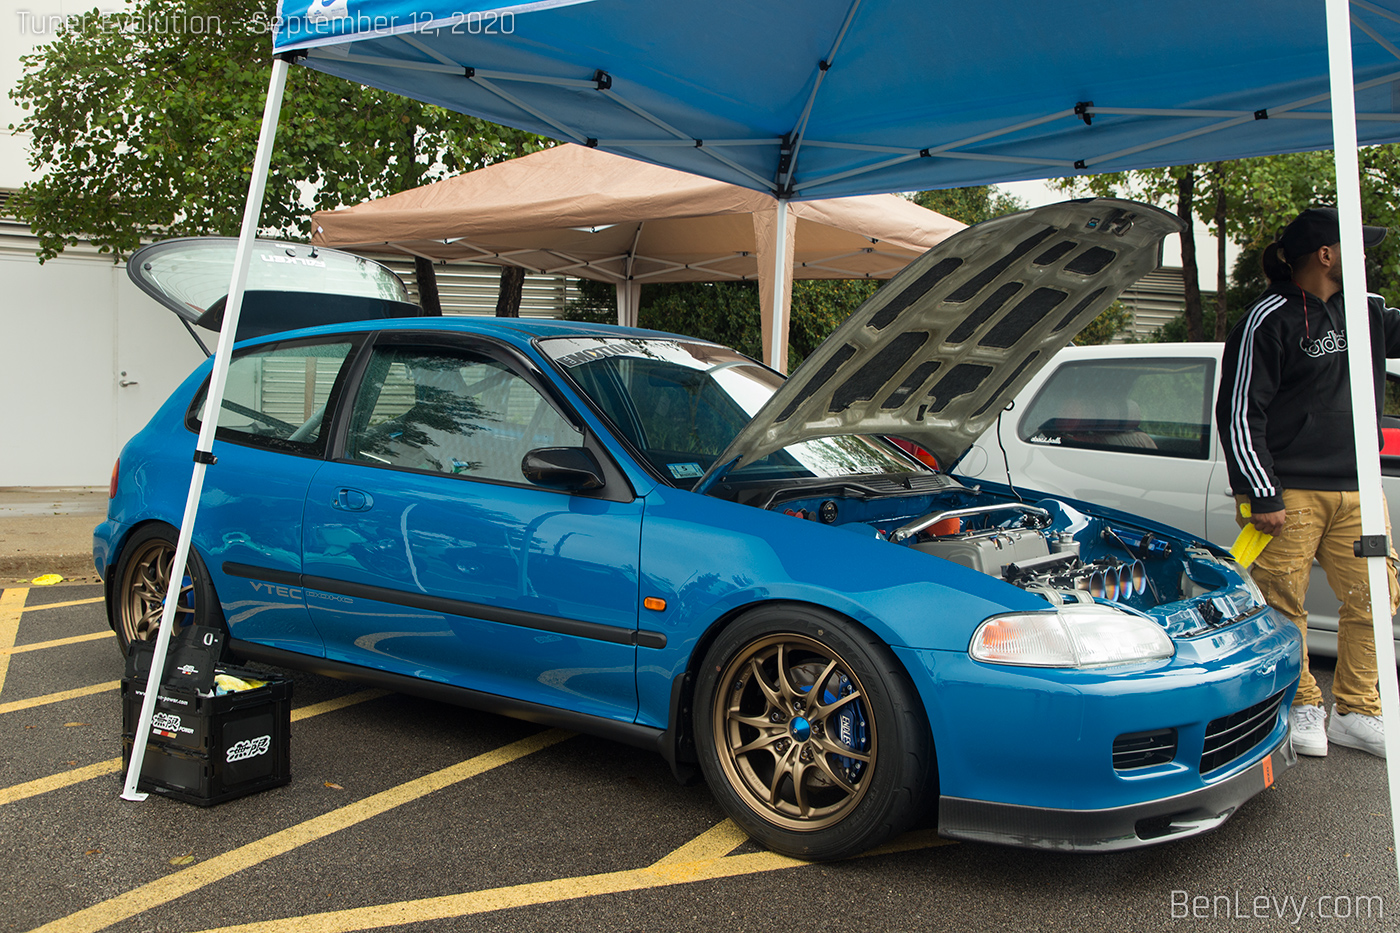 Blue, k-swapped, Honda Civic hatchback.